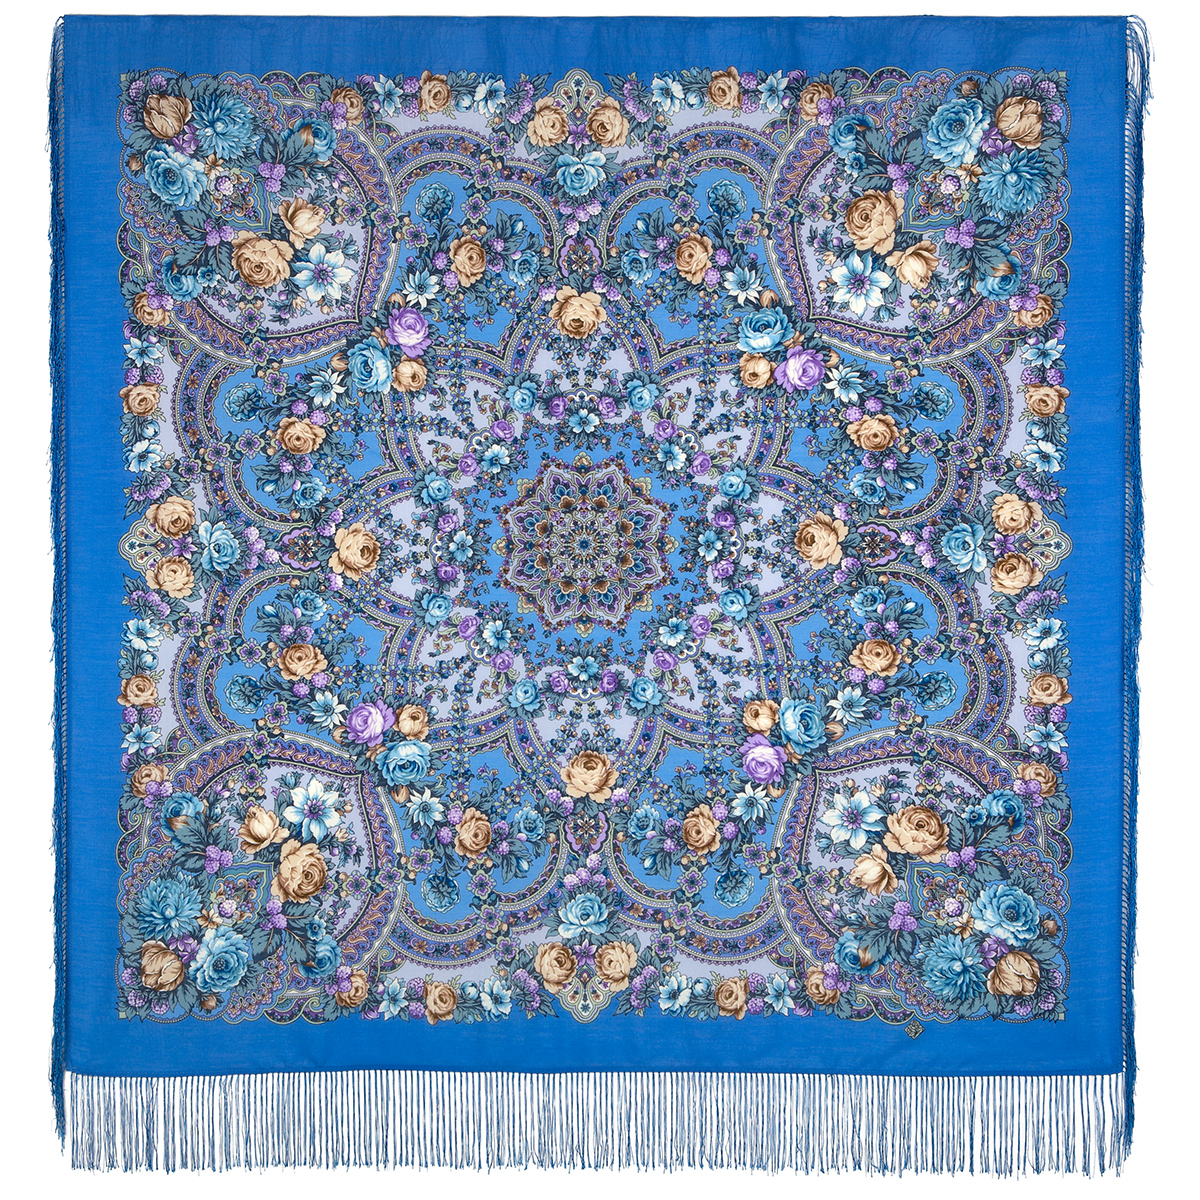 Платок женский Павловопосадский платок 1851 синий/фиолетовый, 125х125 см